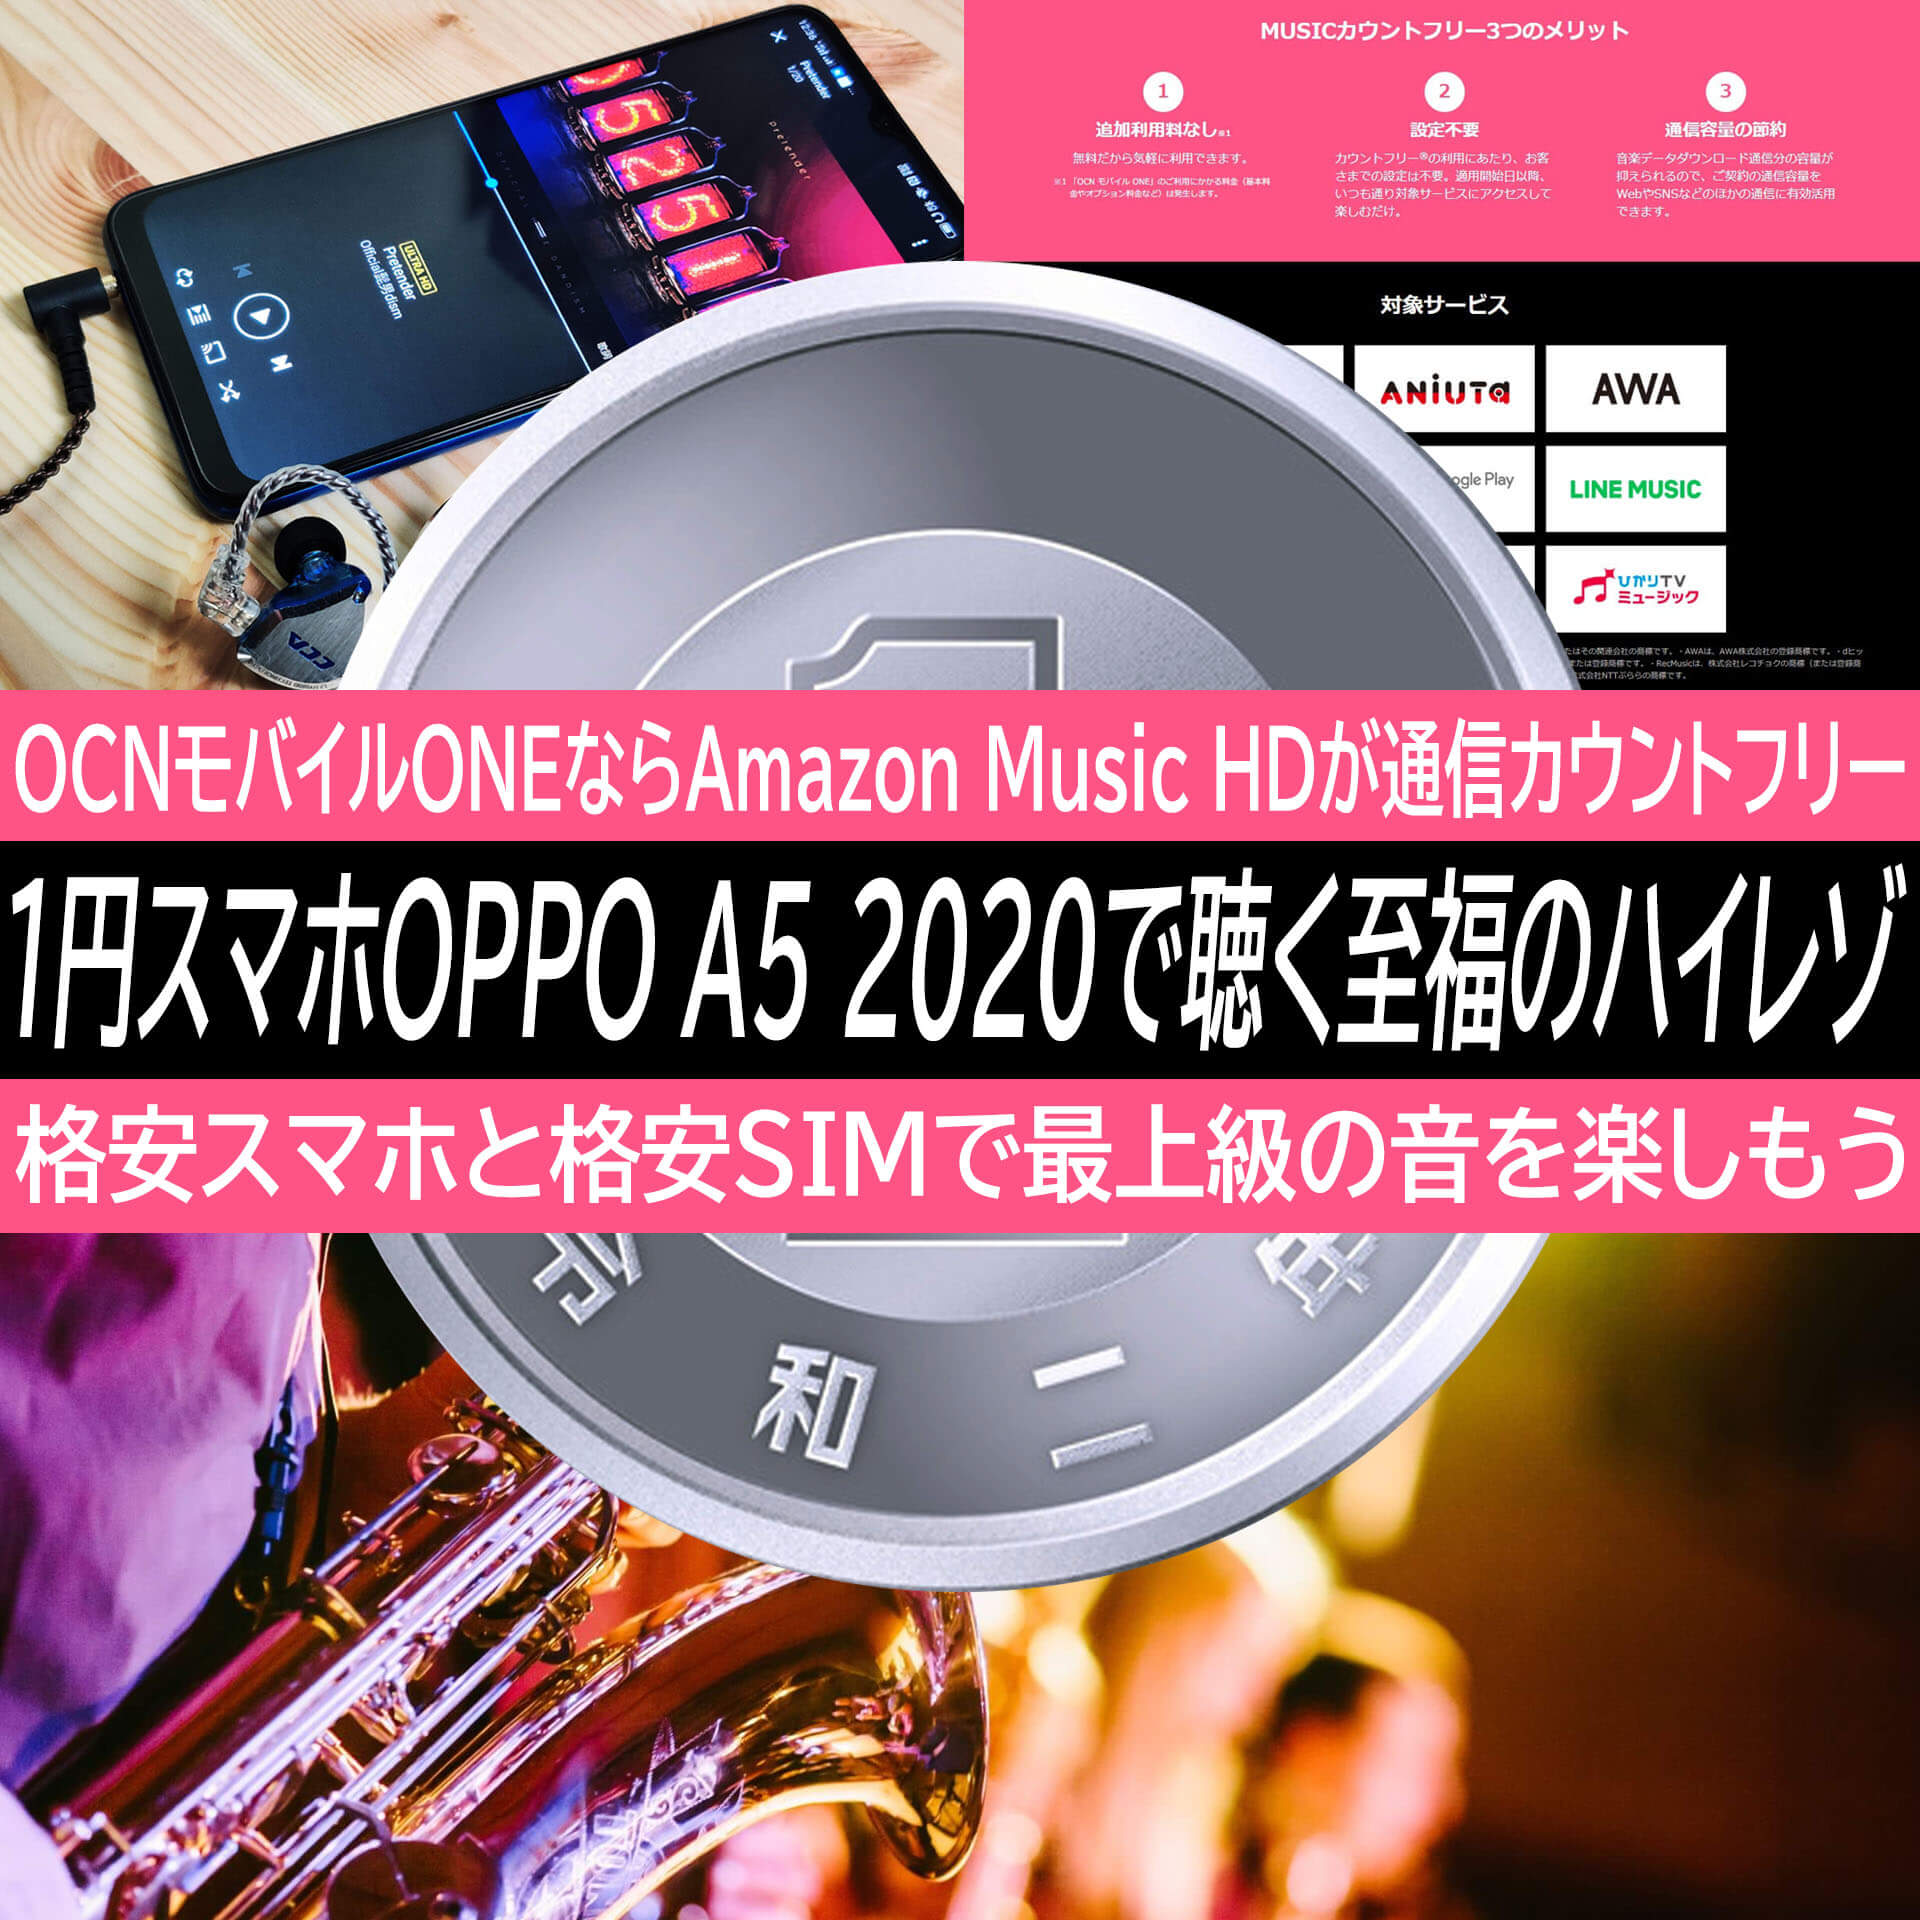 Oppo A5 で聴くamazon Musicのハイレゾは格別 Ocnモバイルoneの無料オプションで通信無制限